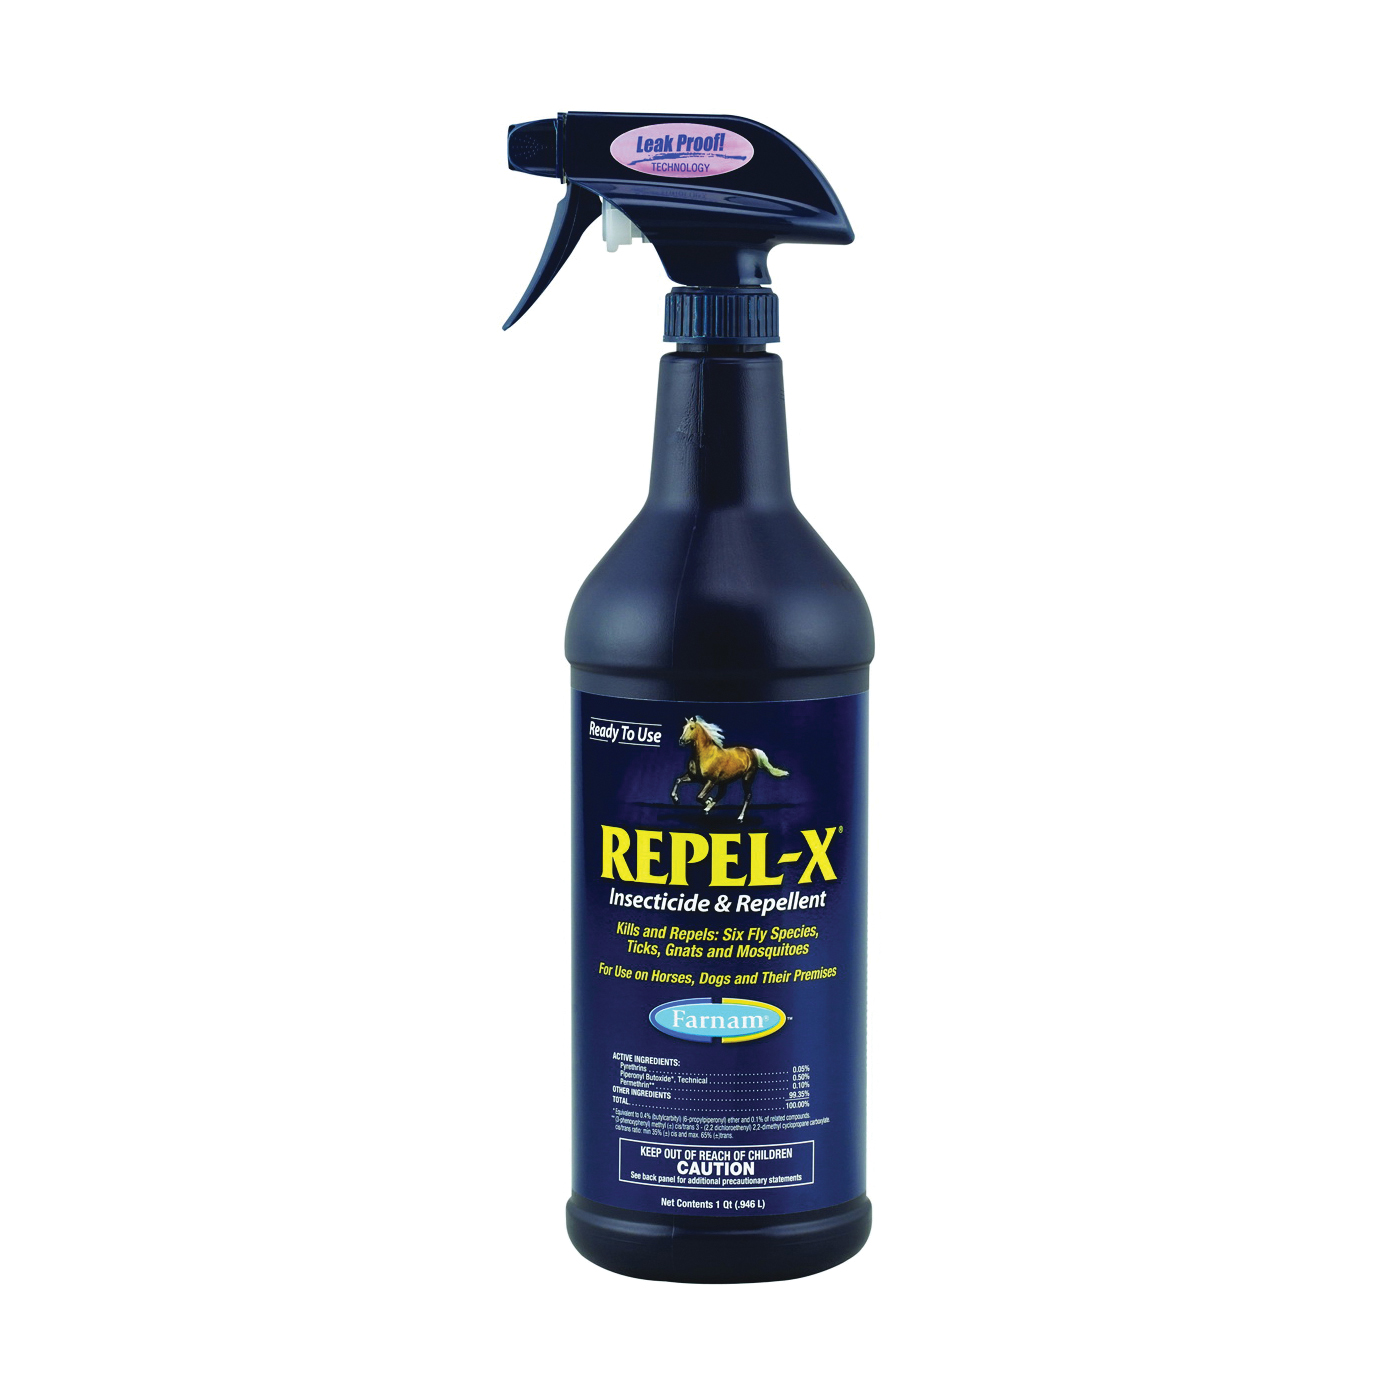 Farnam Repel-X 10330 Insecticide and Repellent, Liquid, Milky White, Citronella, 32 oz